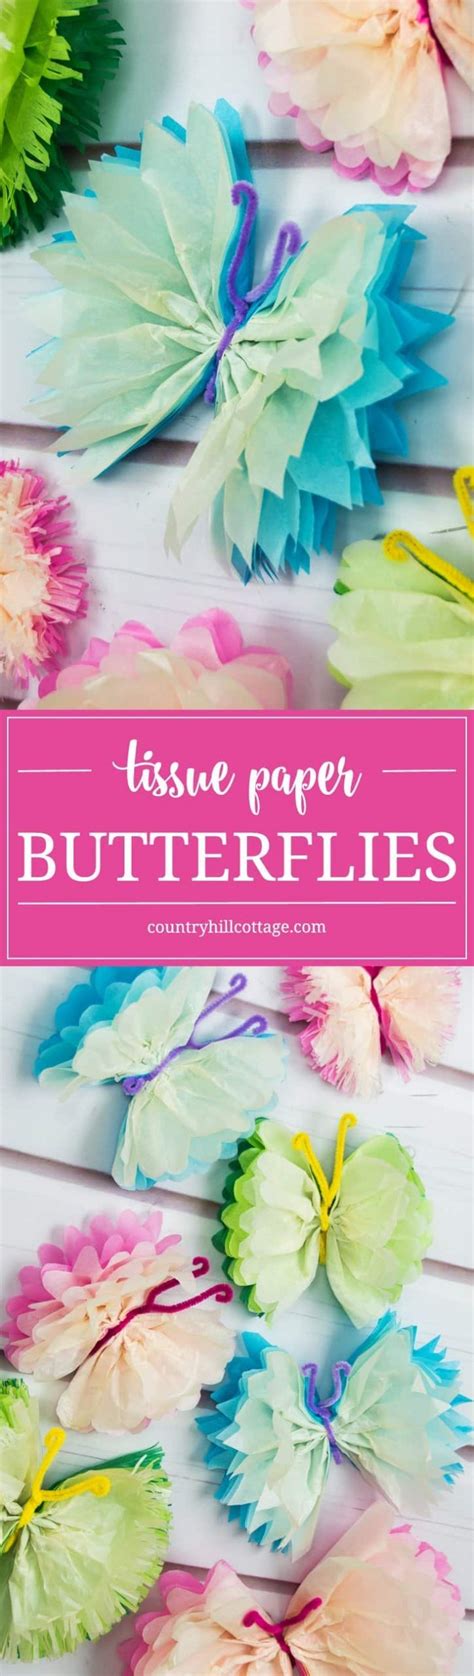 Tissue Paper Butterflies Fun Paper Craft Diy